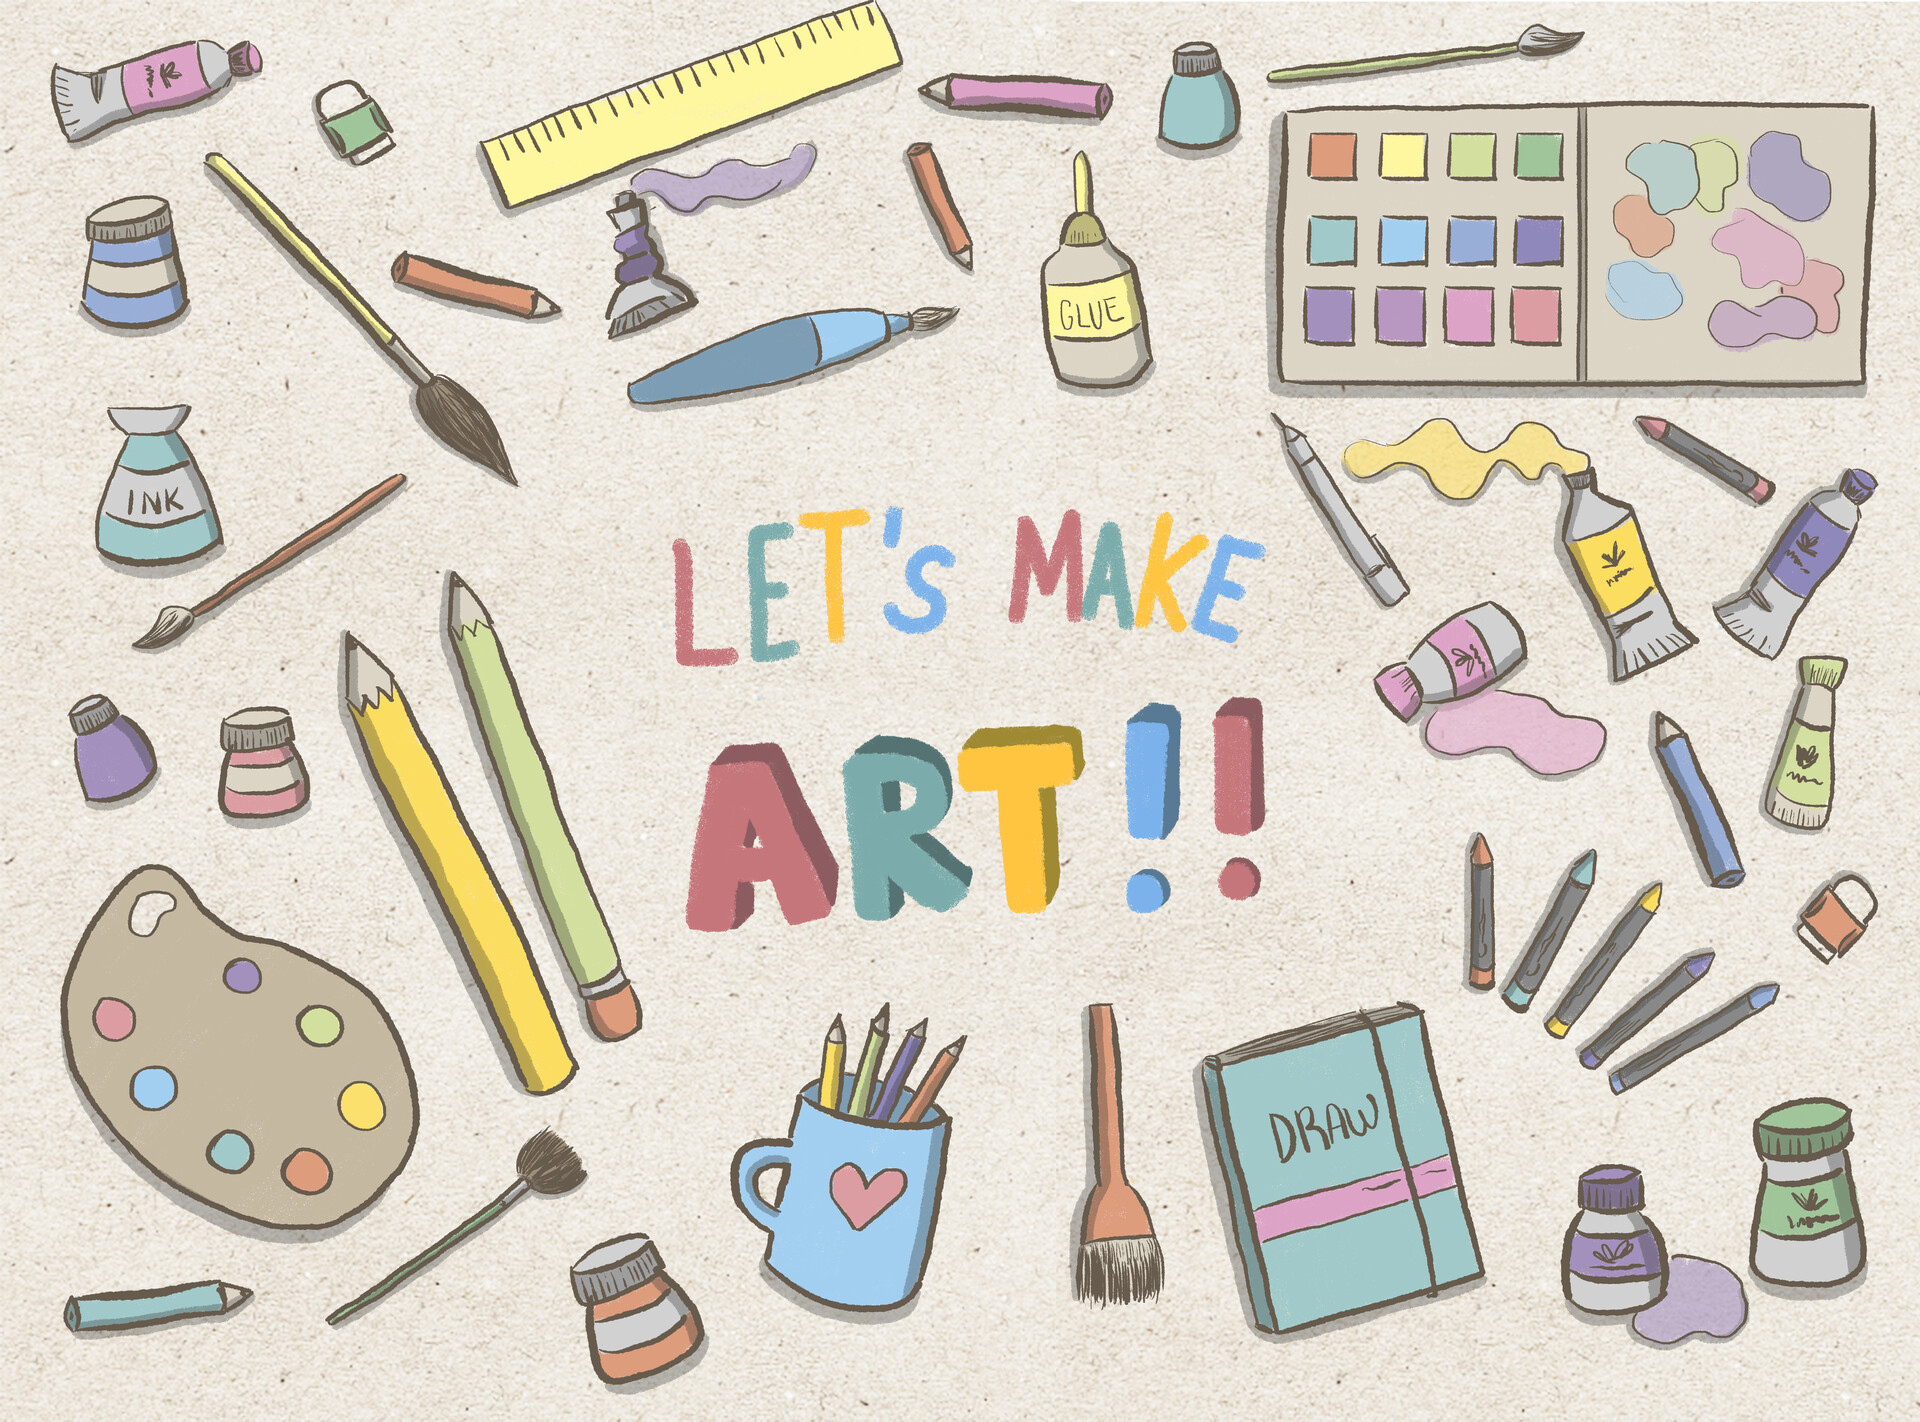 ArtStation - Let's make art